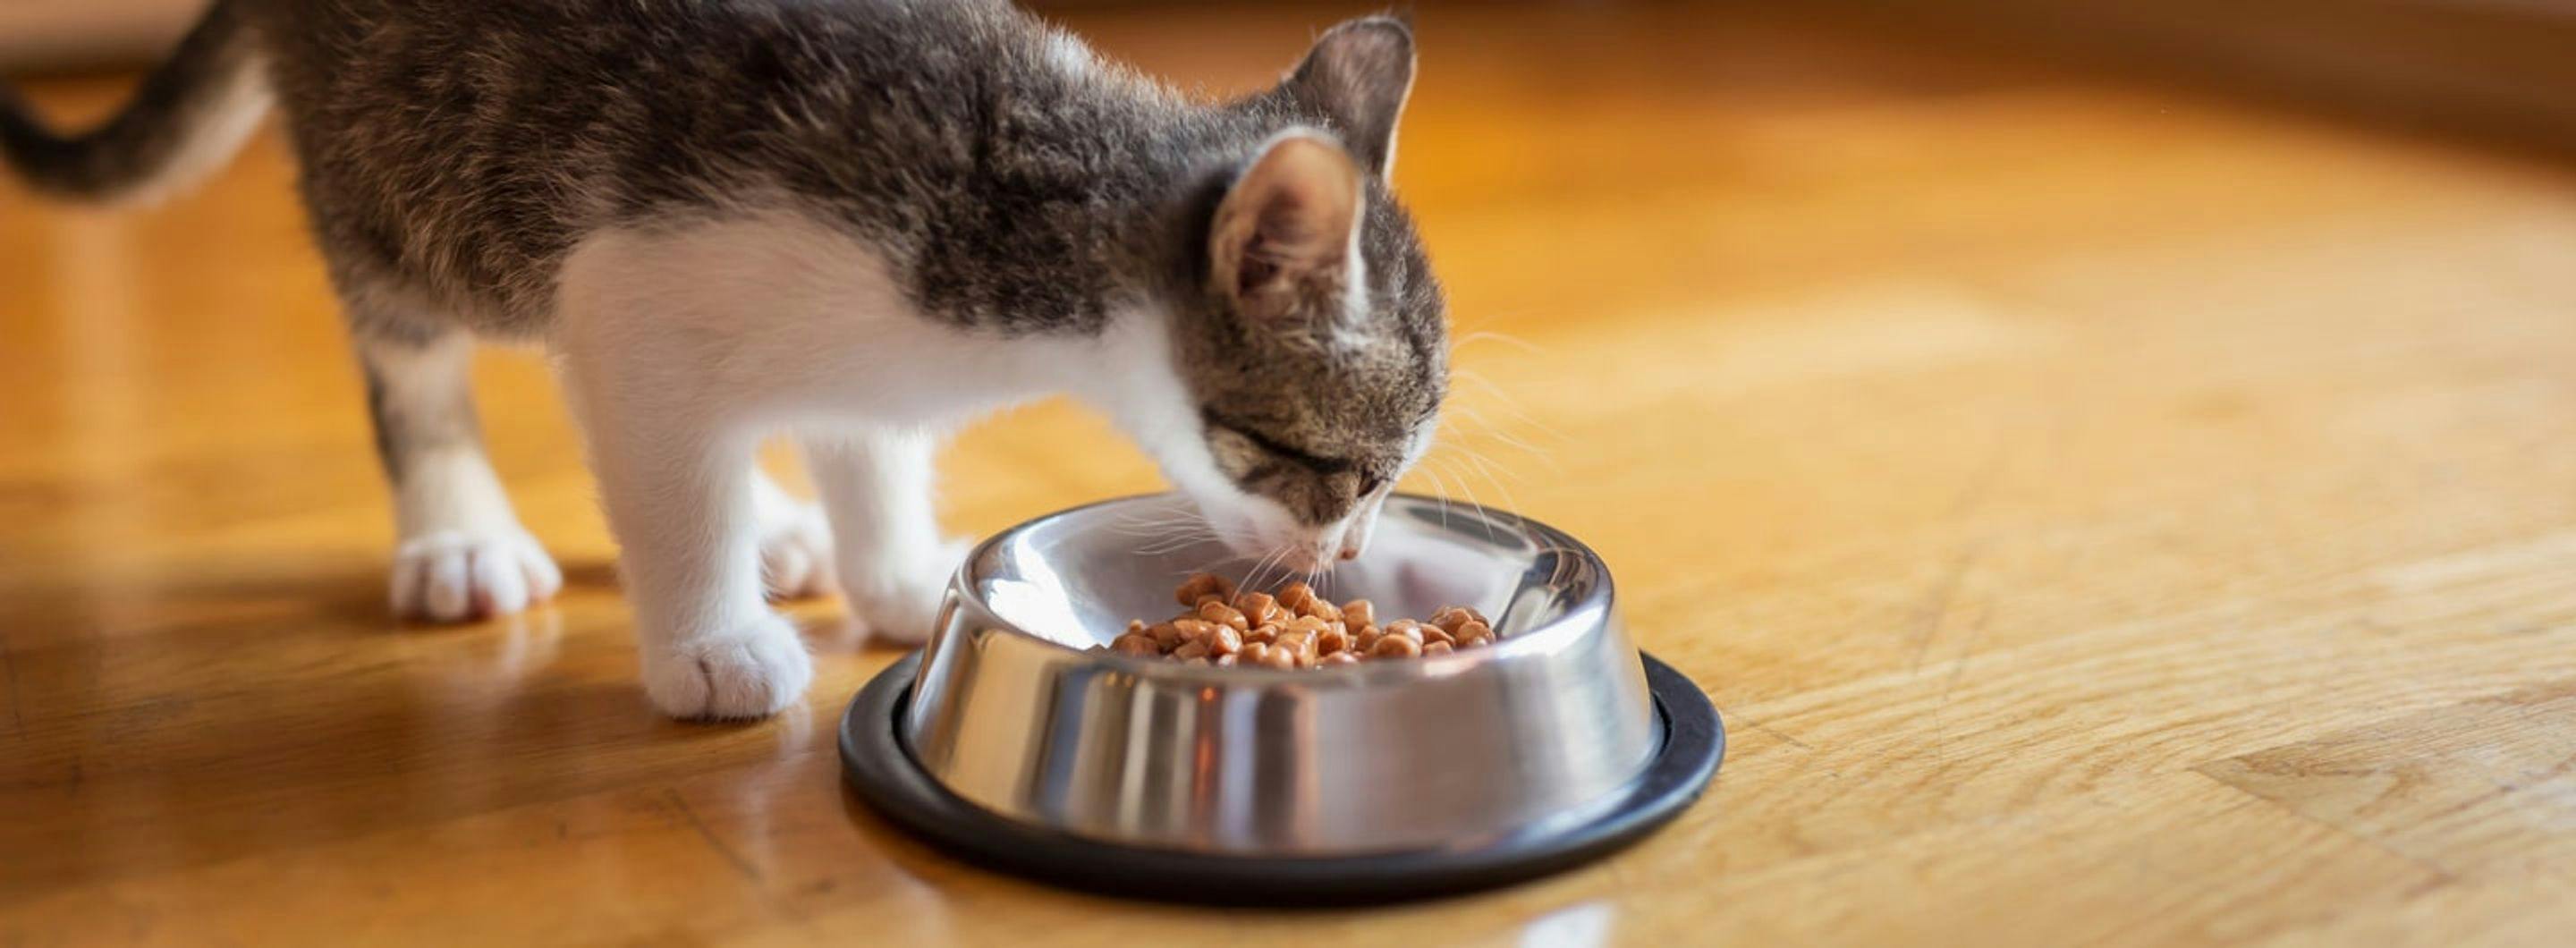 7 Respostas para as perguntas mais frequentes sobre comida húmida para gatinhos